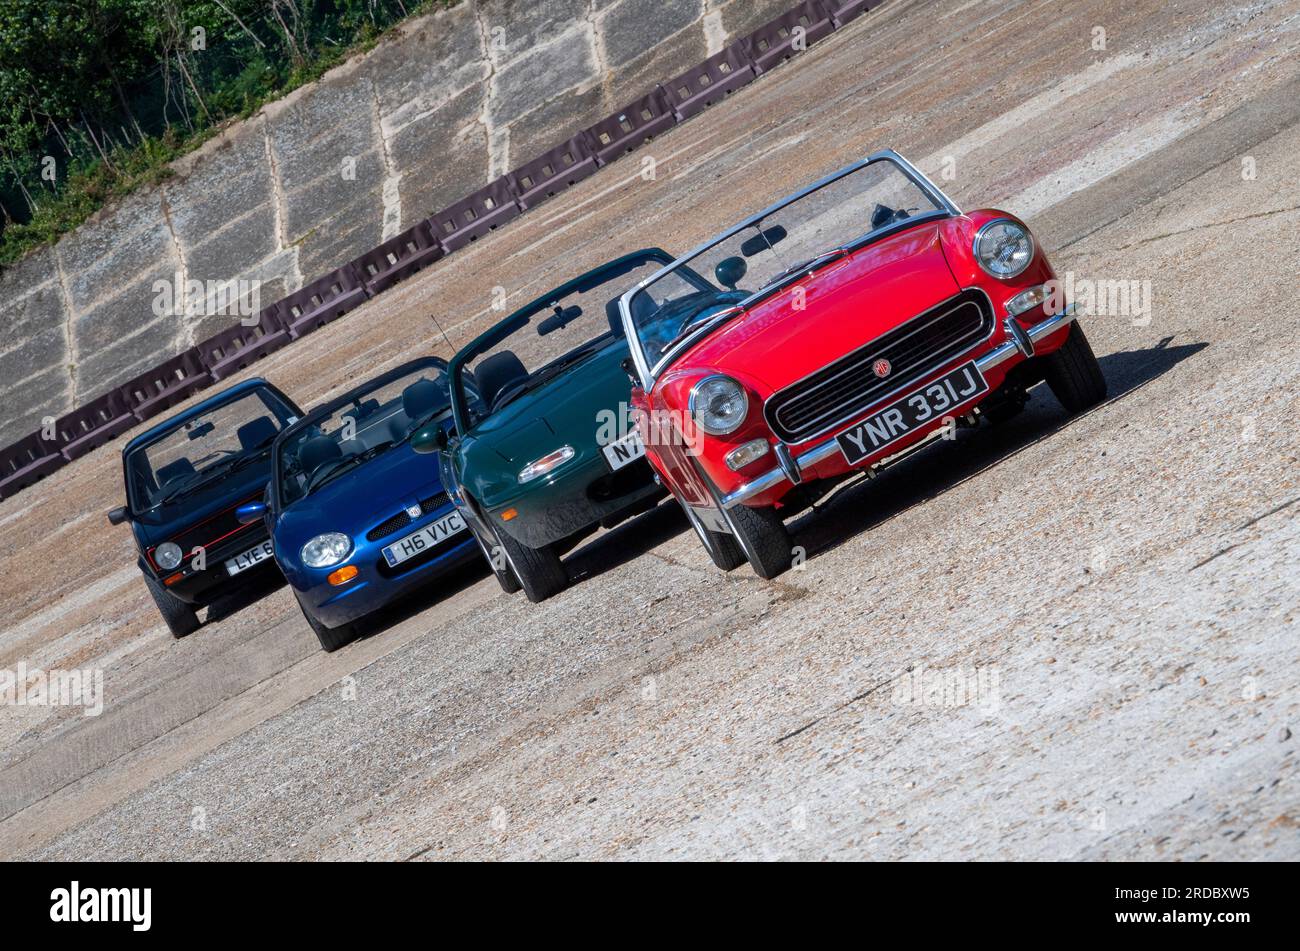 Grandes voitures de sport de différentes générations - Mk1 ma Mazda MX5, MG Midget, MG-F et Mk1 VW Golf GTI Banque D'Images